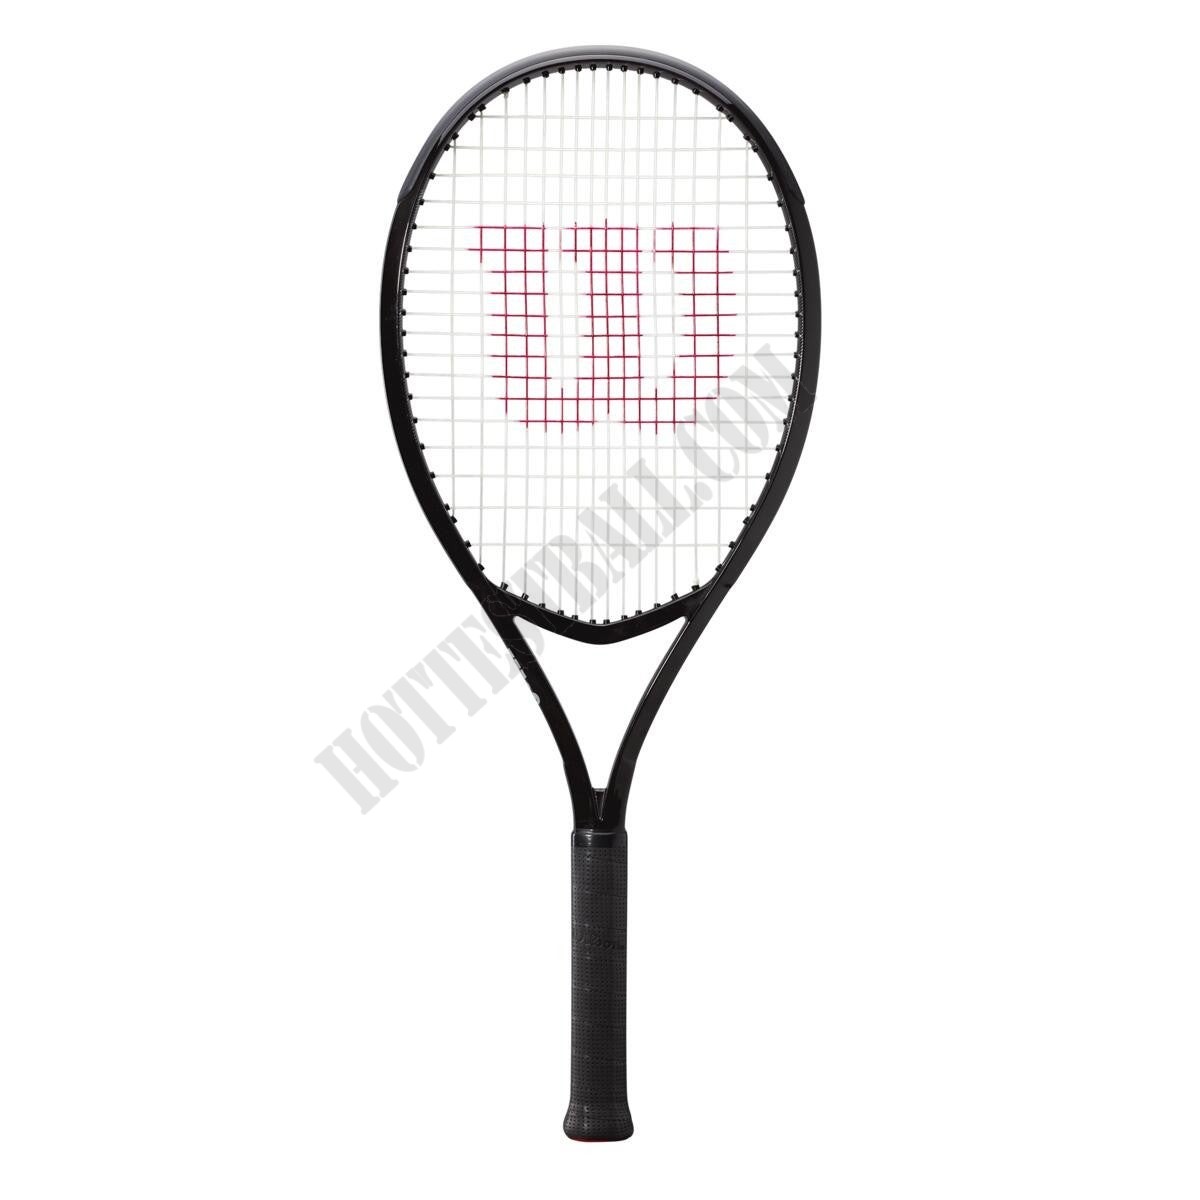 XP 1 Tennis Racket - Wilson Discount Store - -0